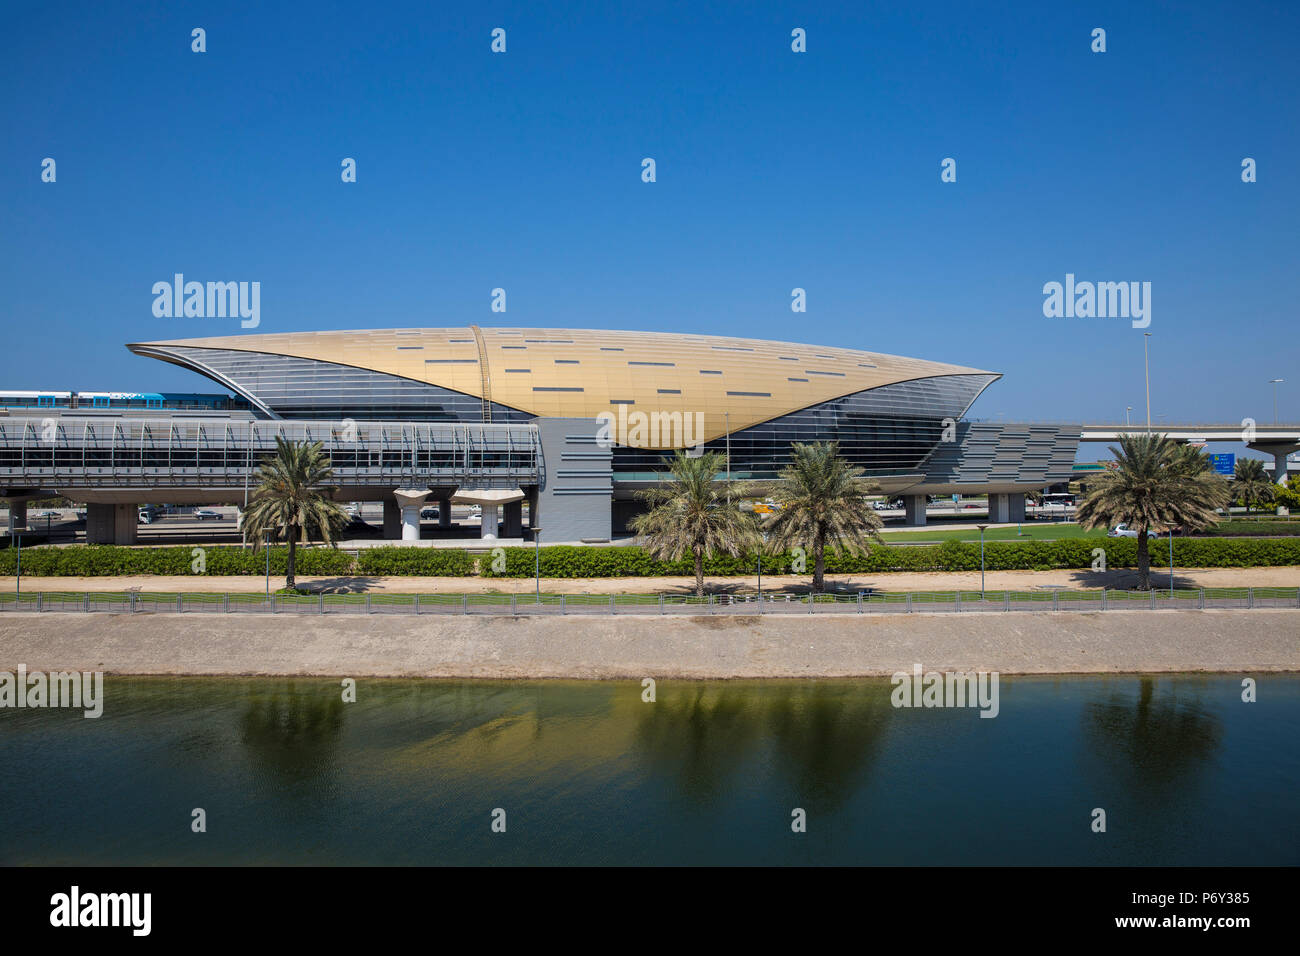 United Arab Emirates, Dubai, Mall of the Emirates metro station Stock Photo